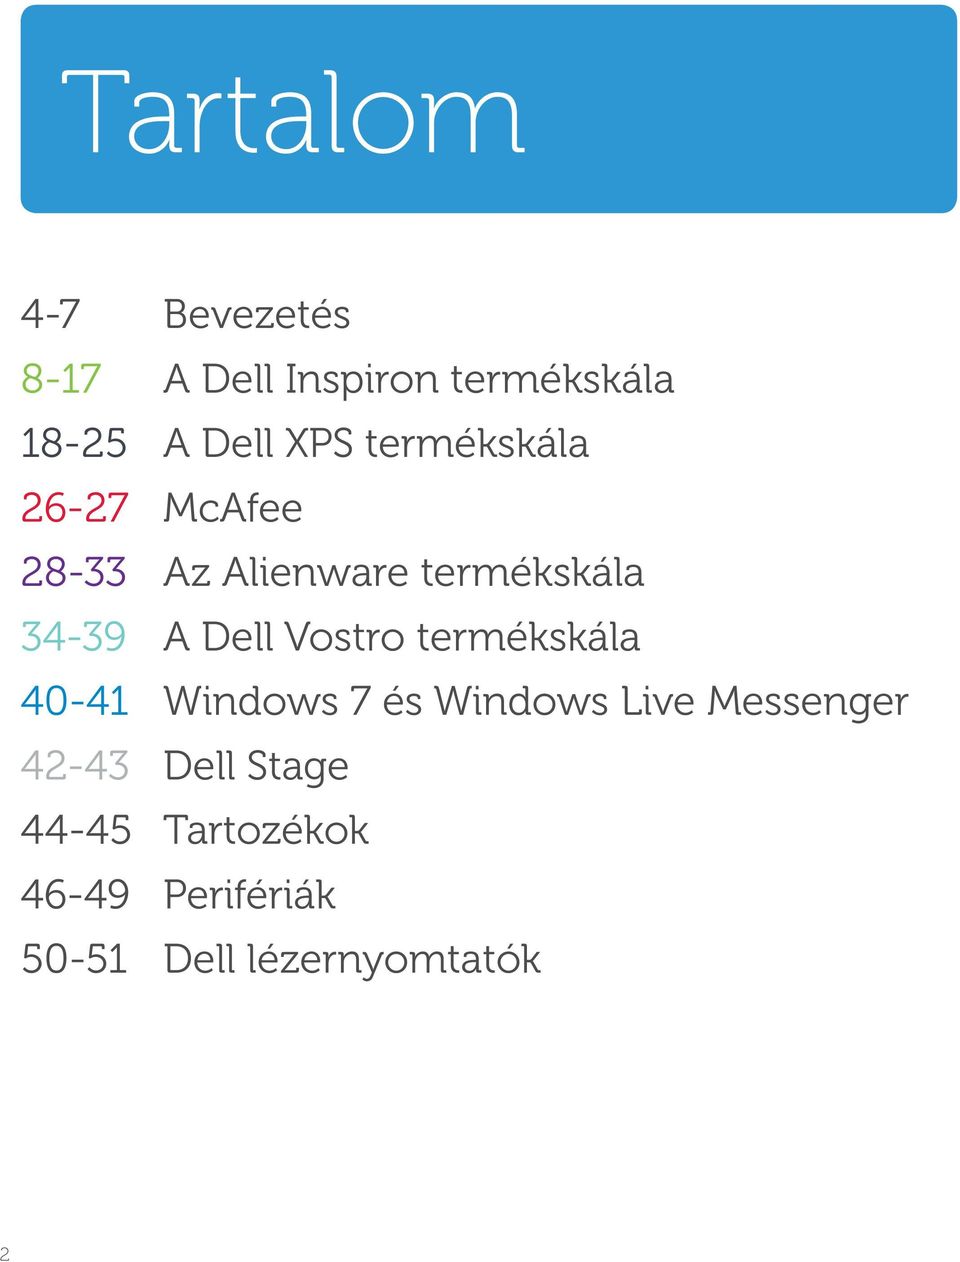 Dell Vostro termékskála 40-41 Windows 7 és Windows Live Messenger